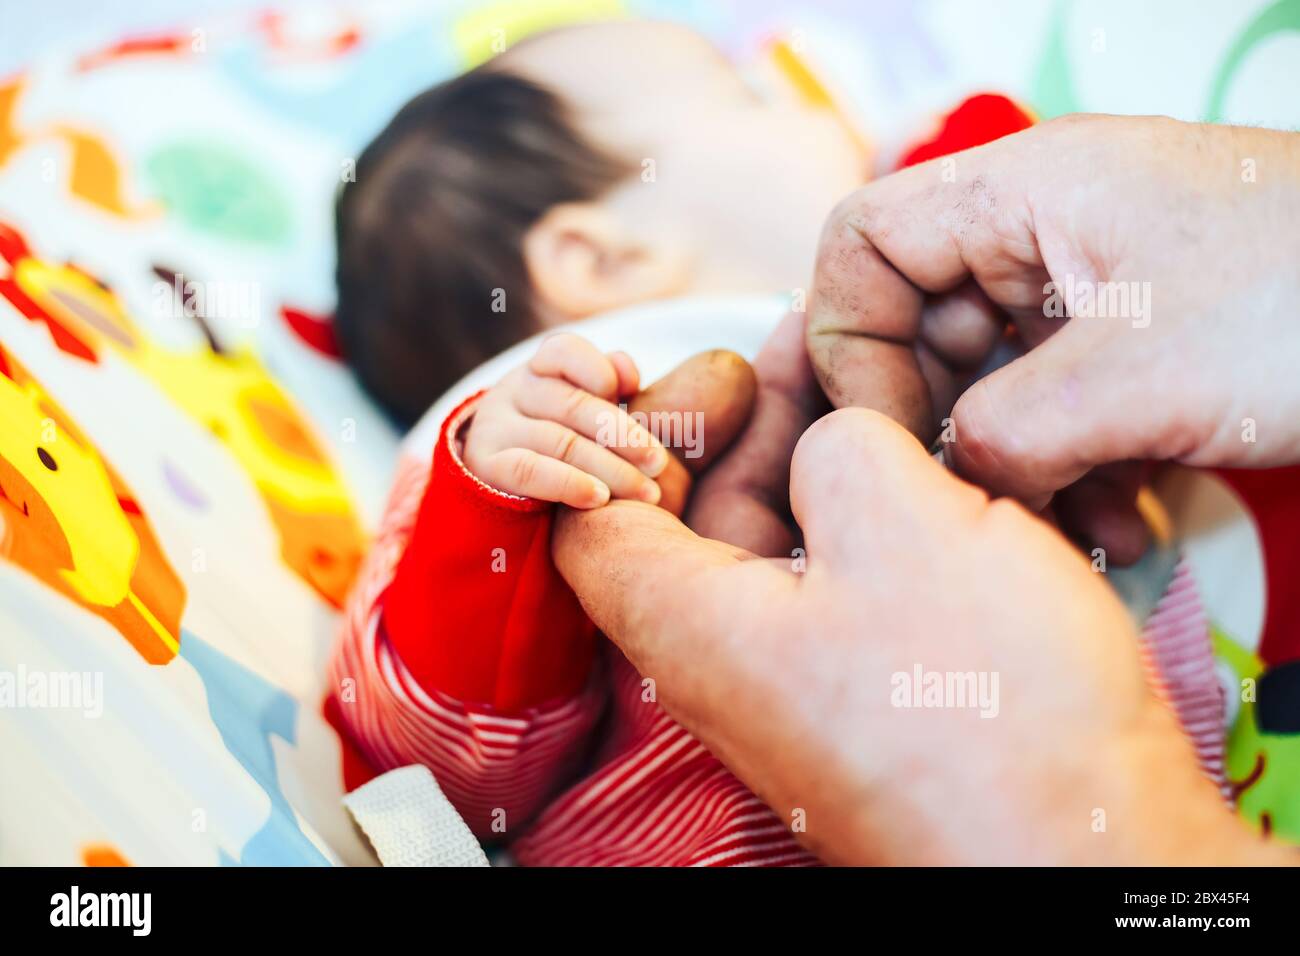 Petite main de bébé dans sa main de grand-père représentant le lien et la relation entre les grands-parents et les petits-enfants Banque D'Images